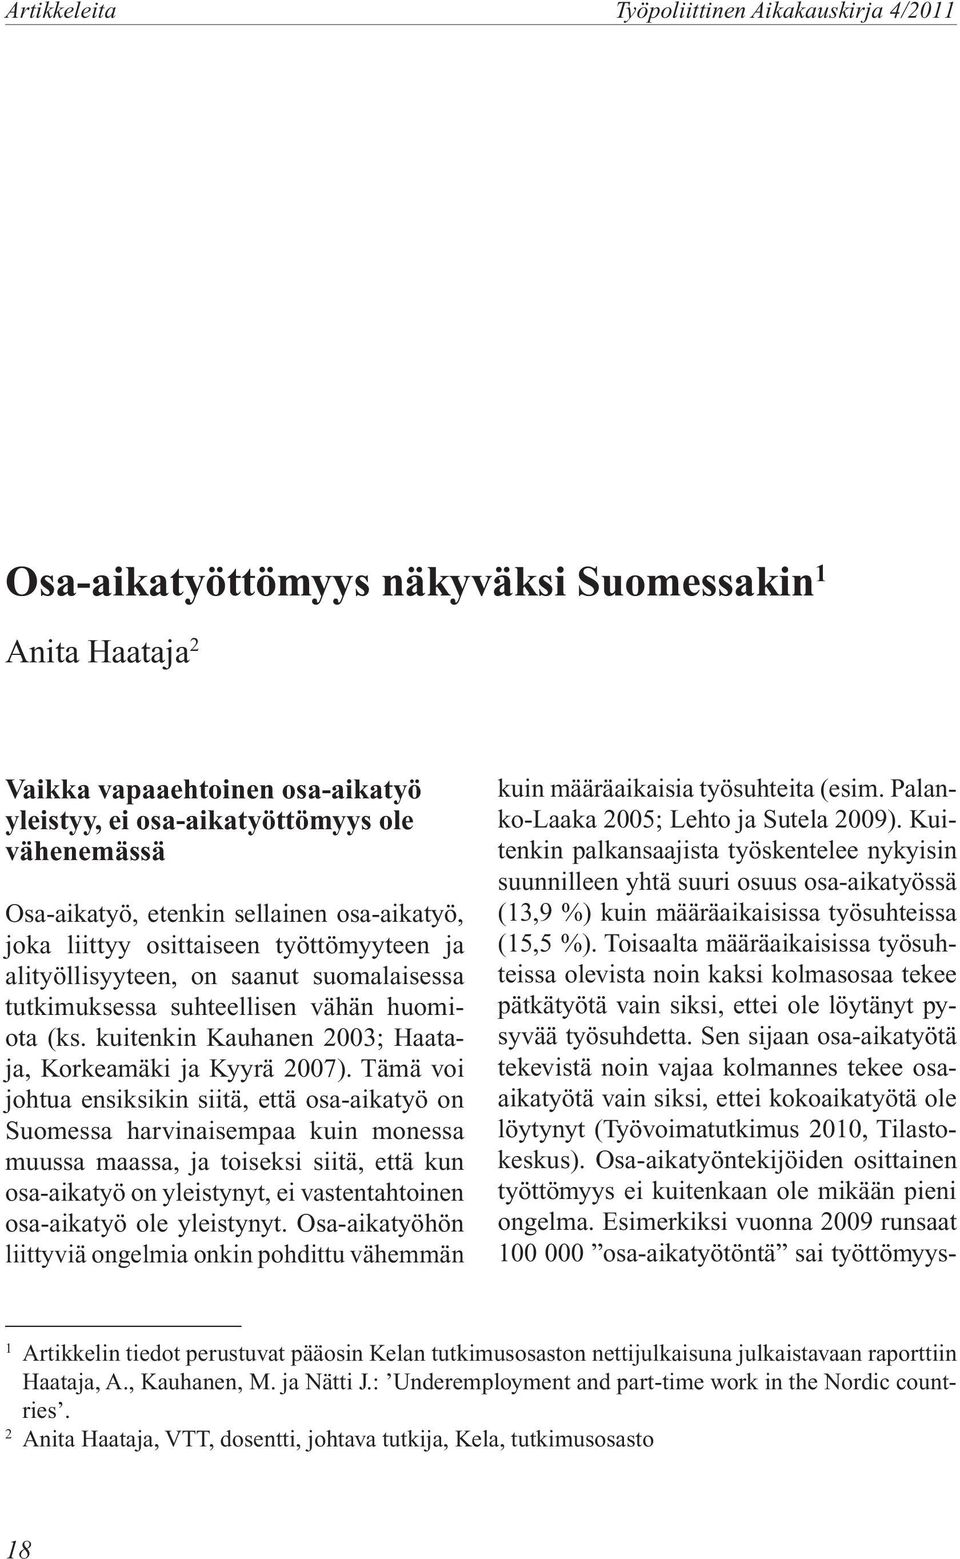 kuitenkin Kauhanen 2003; Haataja, Korkeamäki ja Kyyrä 2007).